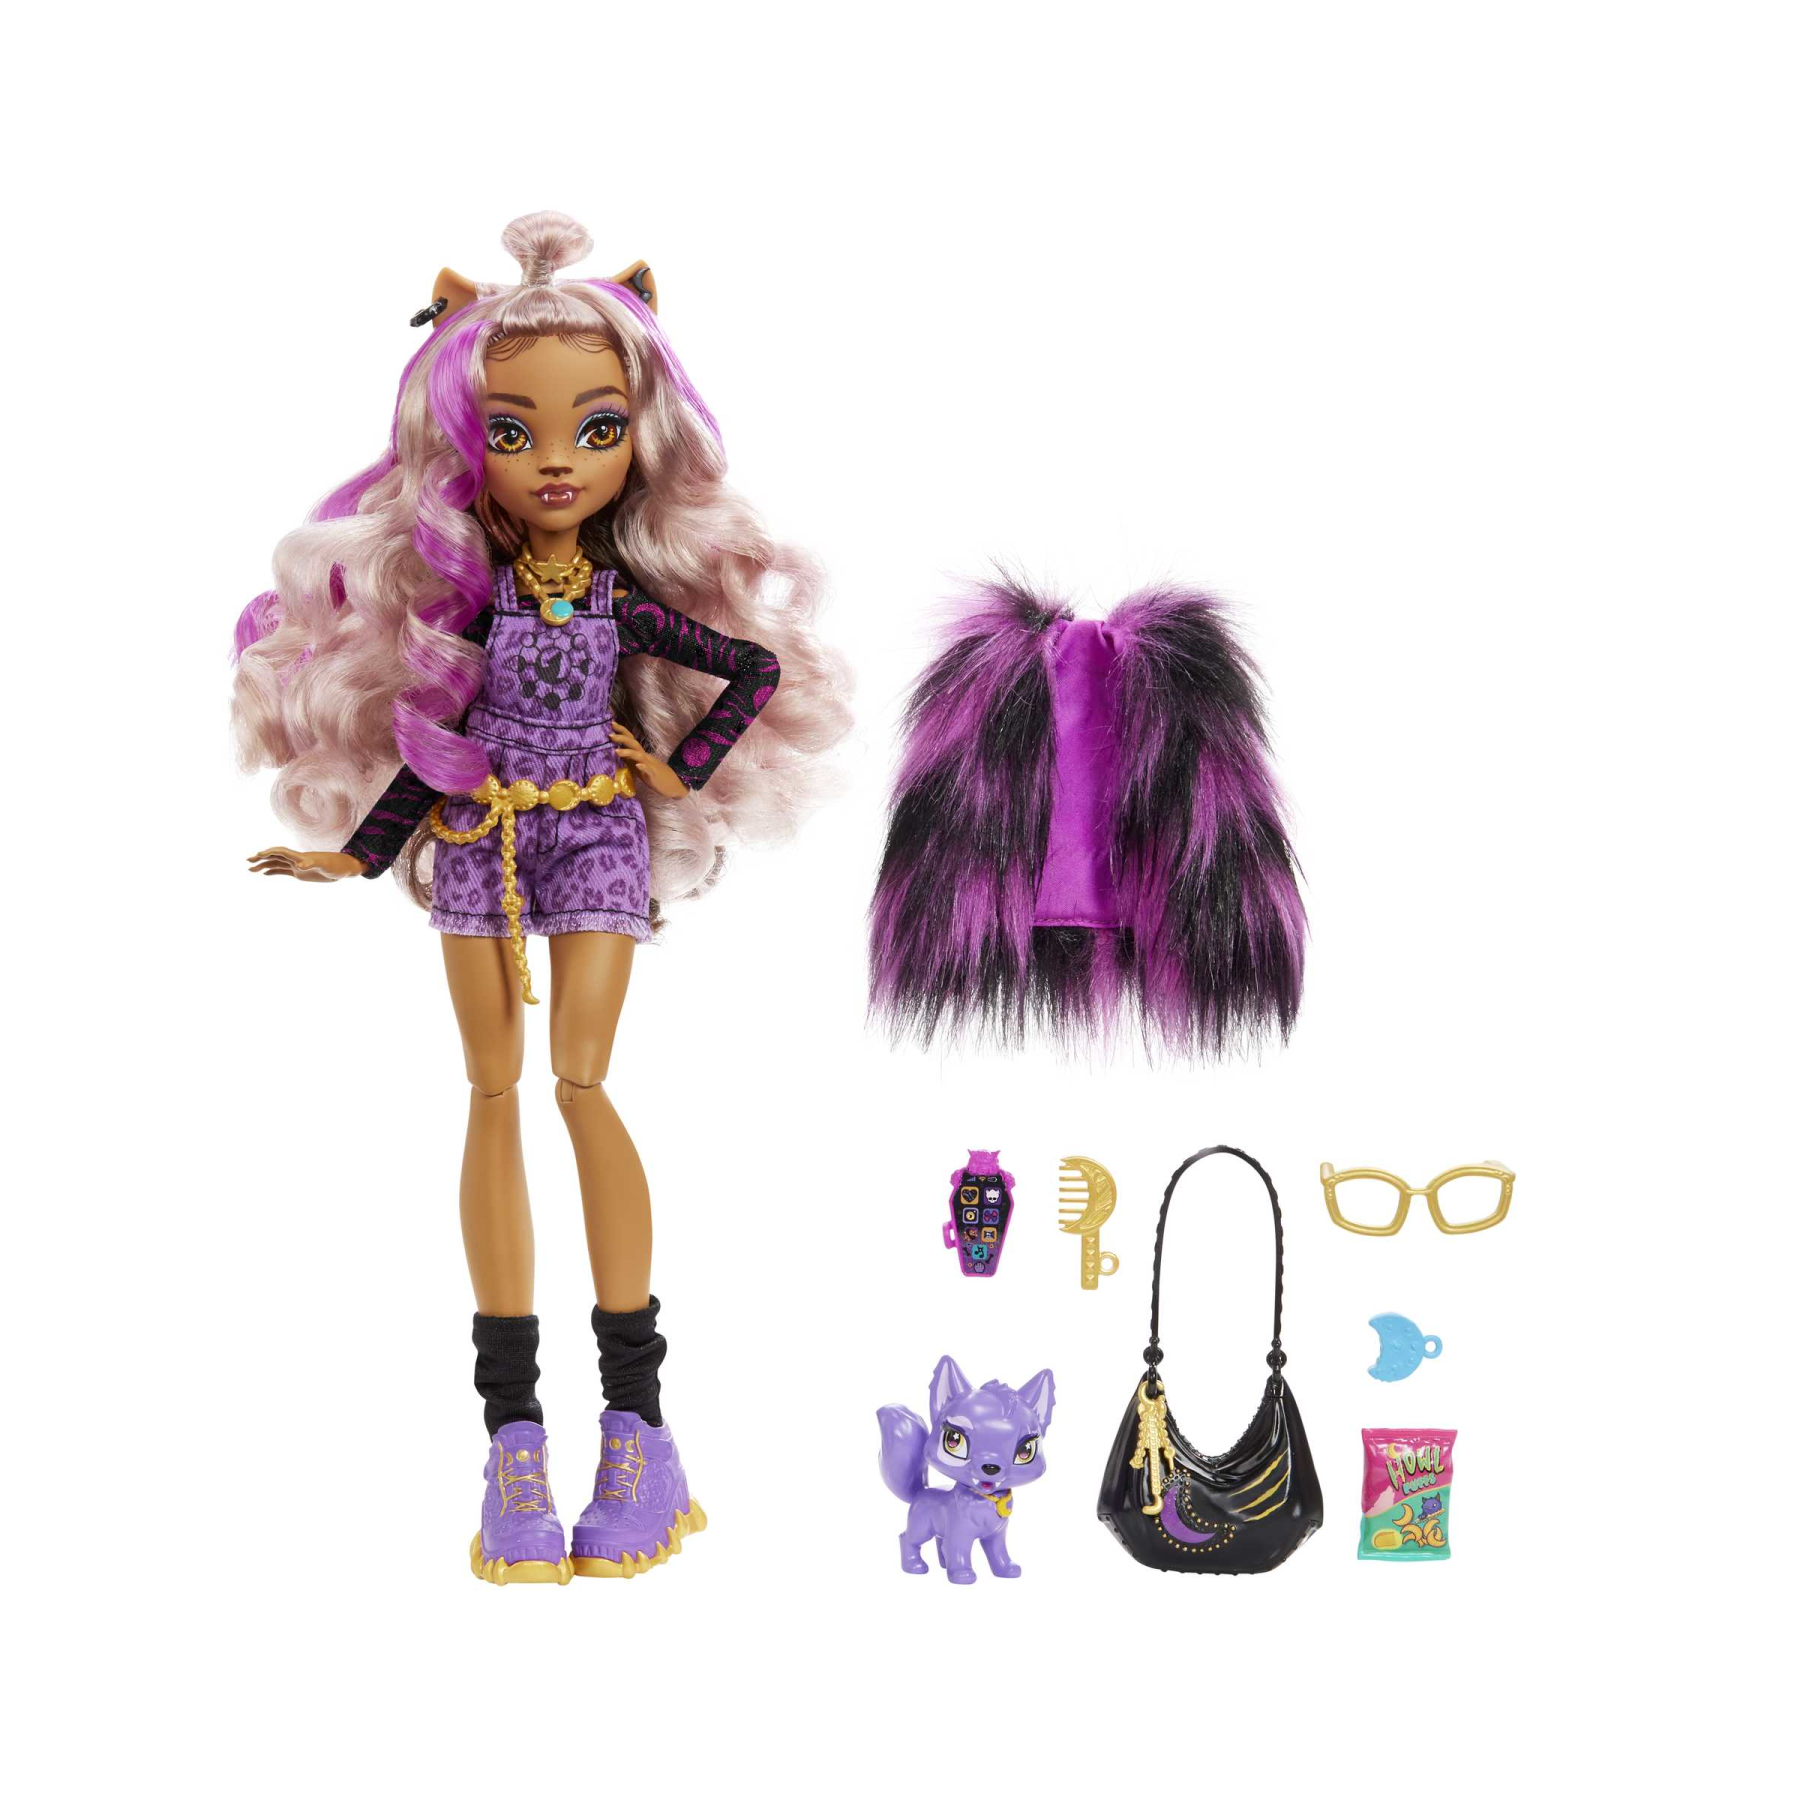 Monster high - clawdeen, bambola con accessori e gattino, snodata e alla moda con capelli con ciocche viola, giocattolo per bambini, 4+ anni, hhk52 - Monster High